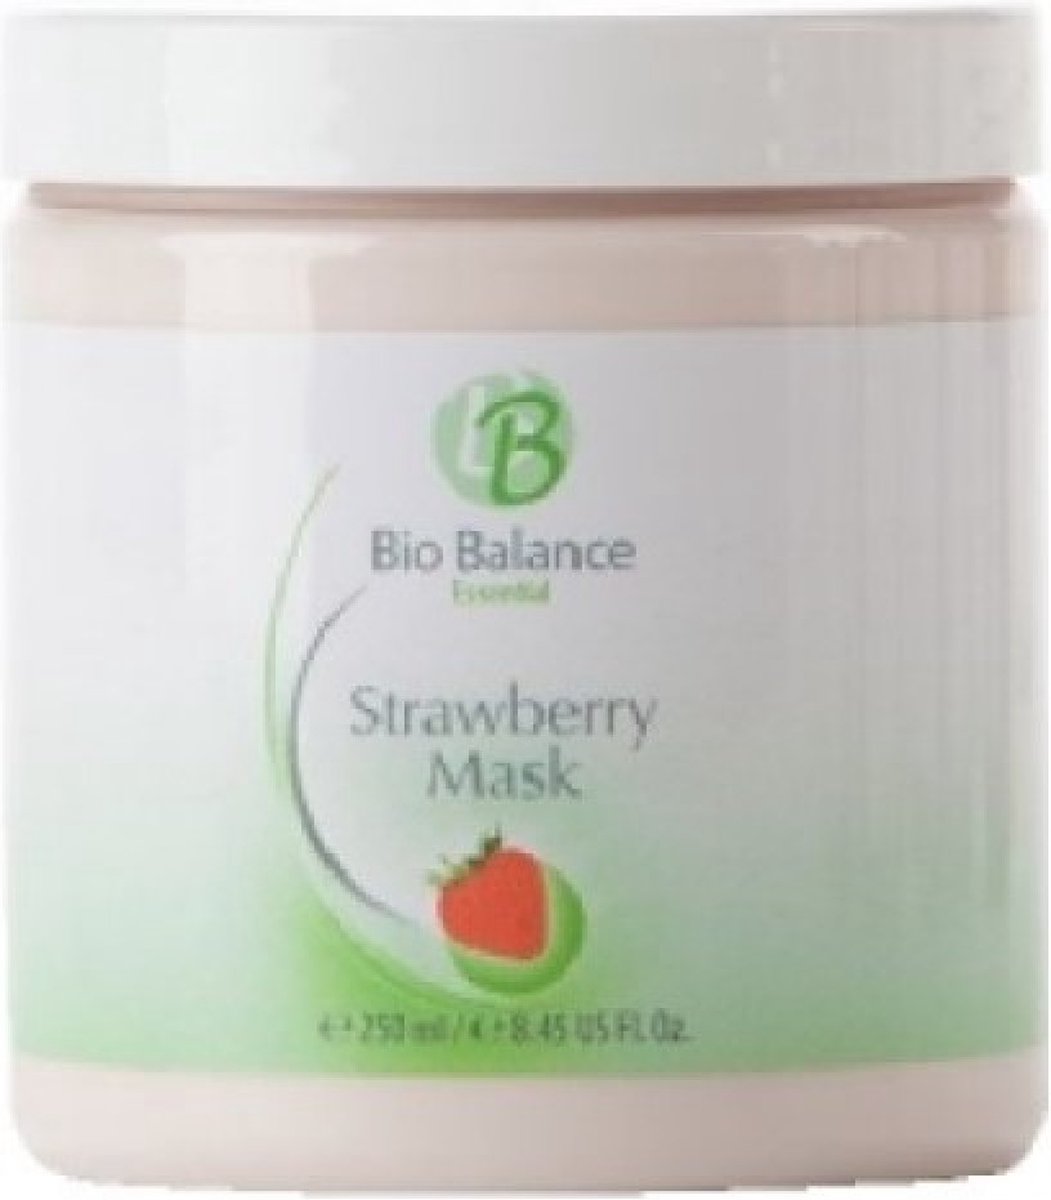 Bio Balance - strawberry masker